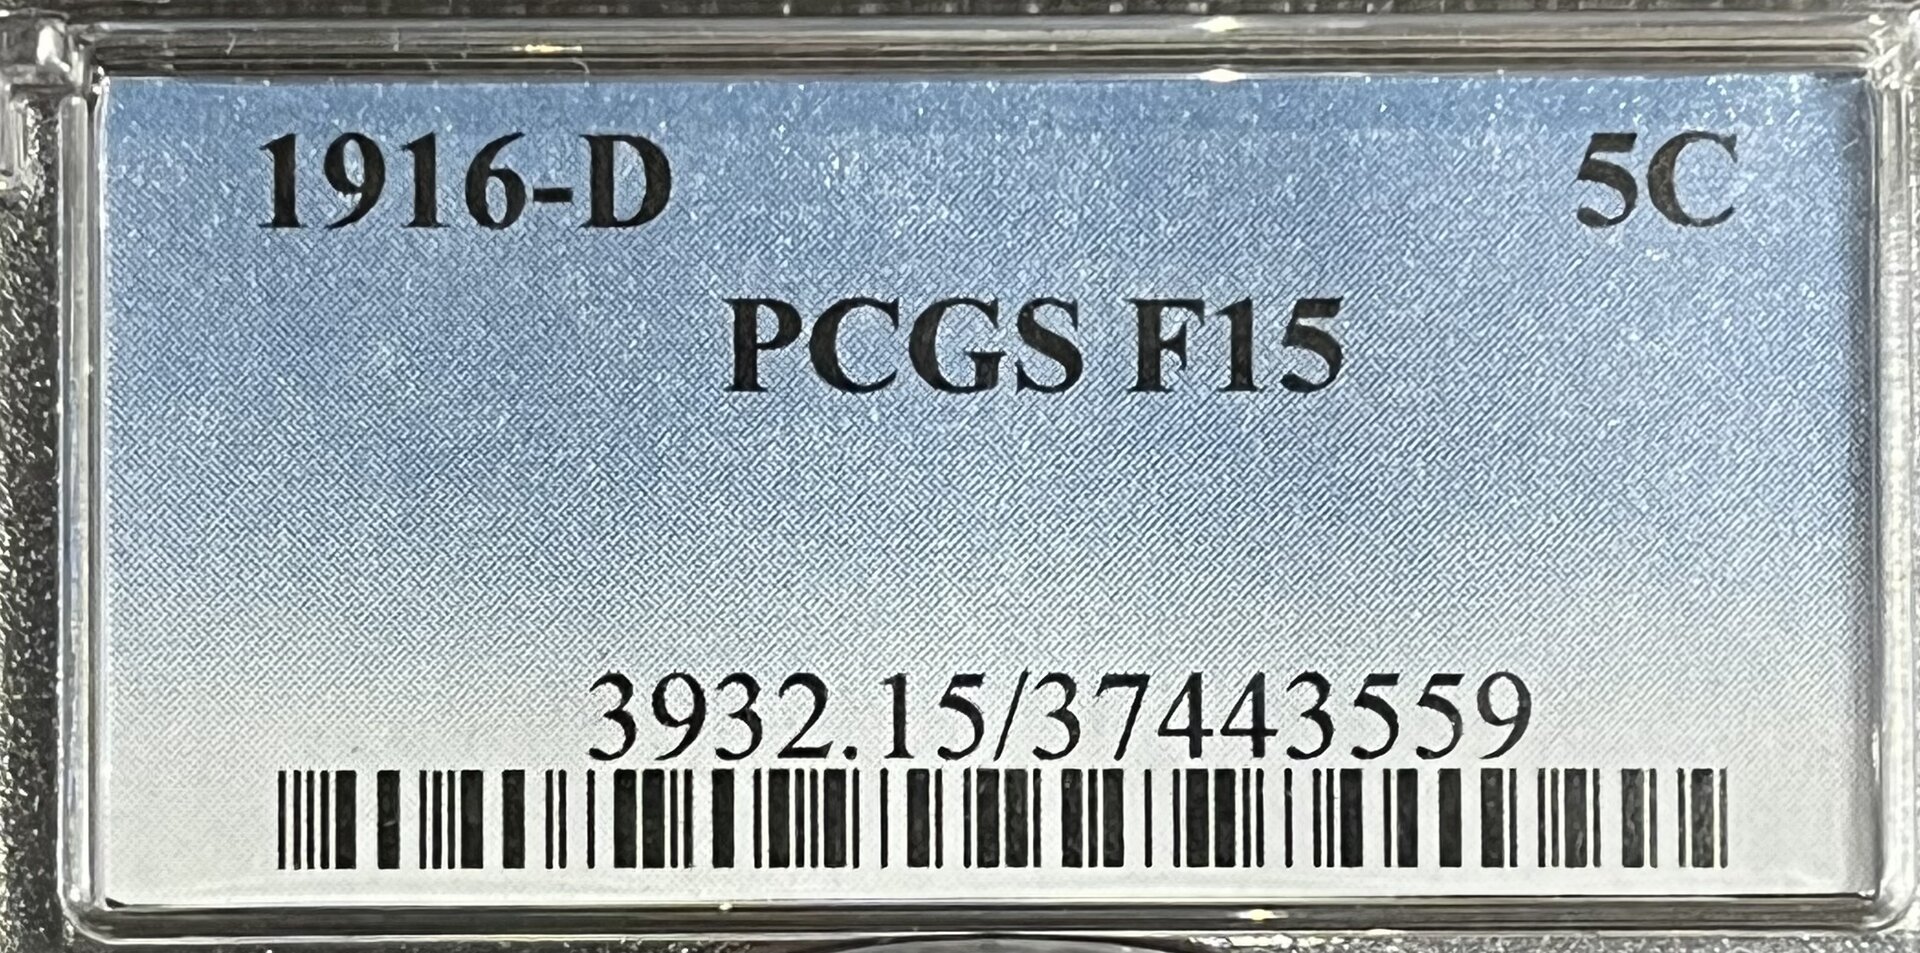 B83DC1E1-F461-4CD1-9A6D-D1E5E85ACC64.jpeg